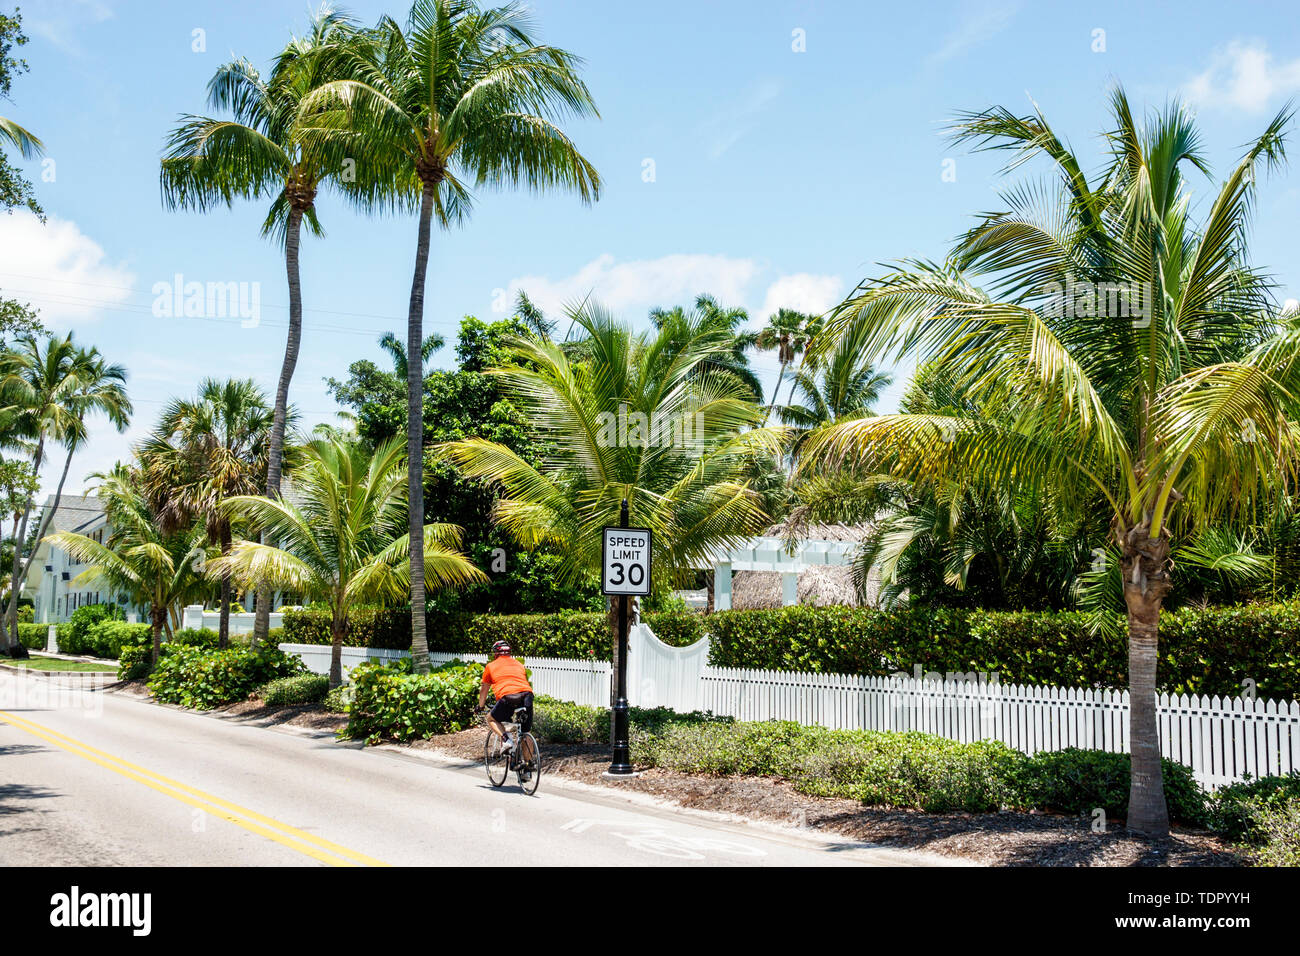 Naples Floride, quartier rue, homme hommes hommes, vélos vélo vélo vélo vélo rider cyclistes vélos, clôture de piquets blancs, palmiers, FL19051 Banque D'Images